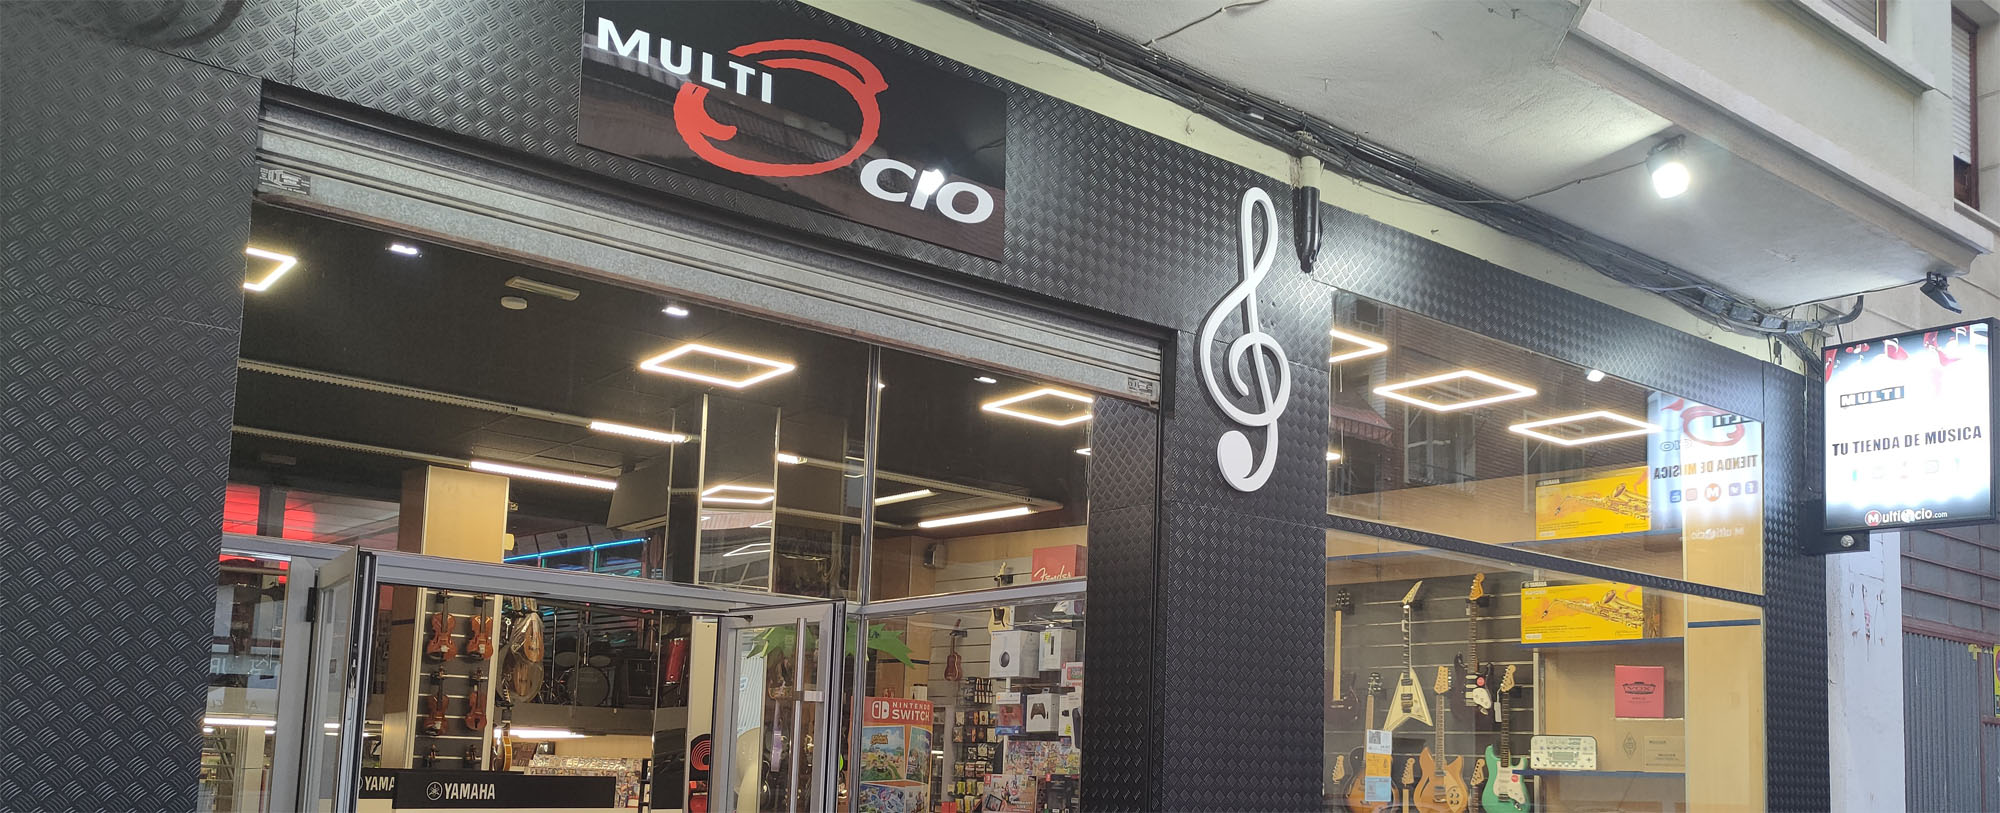 Multiocio Tienda de Música